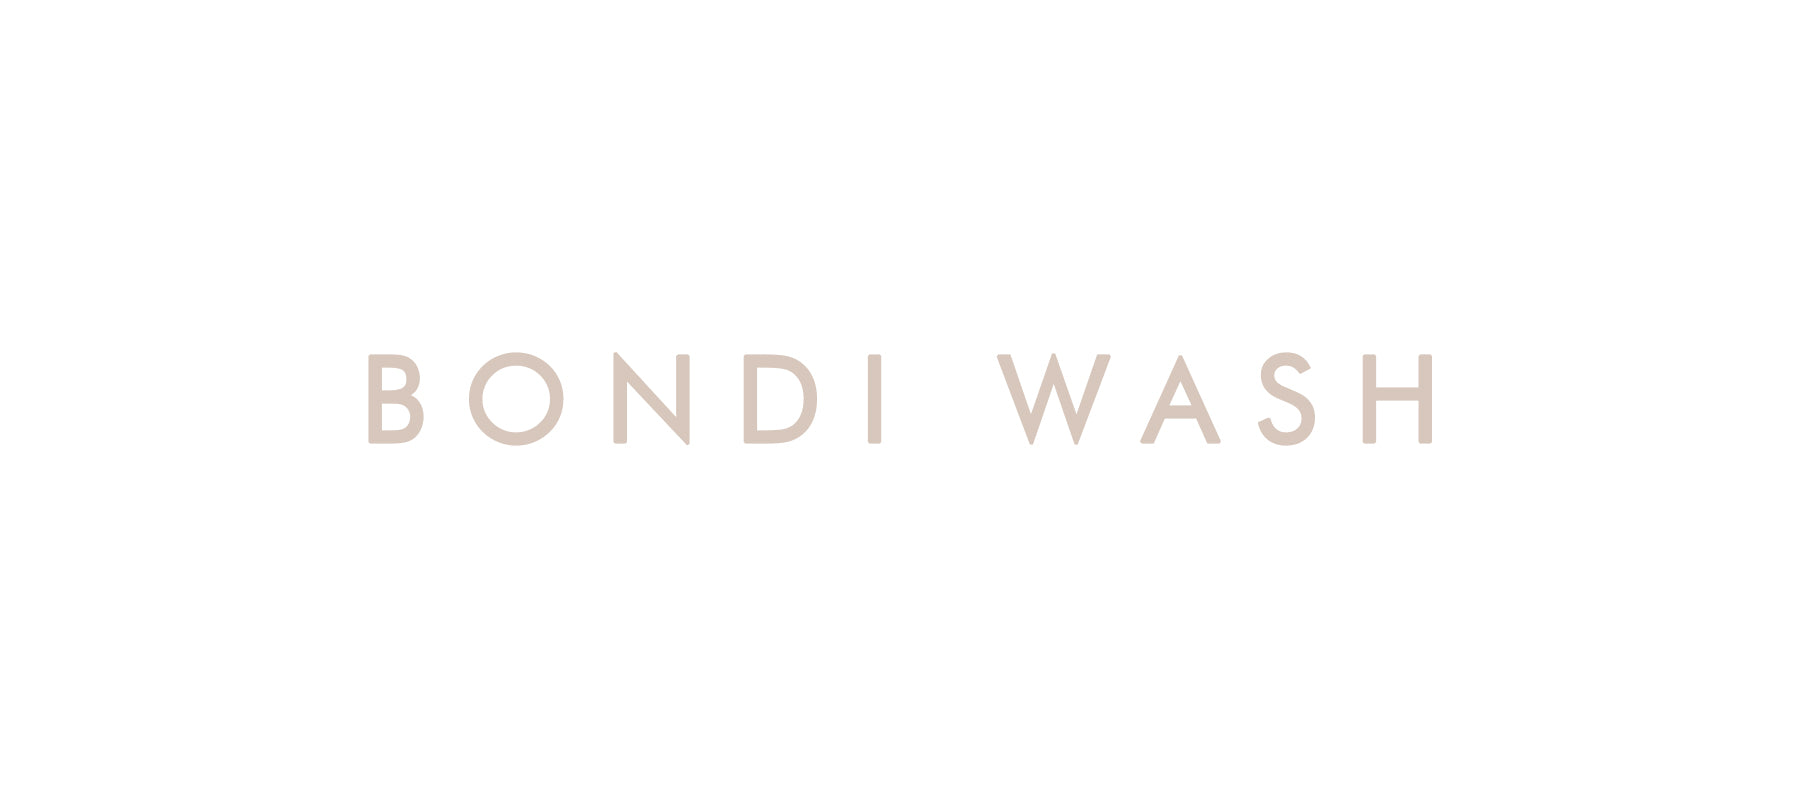 Bondi Wash